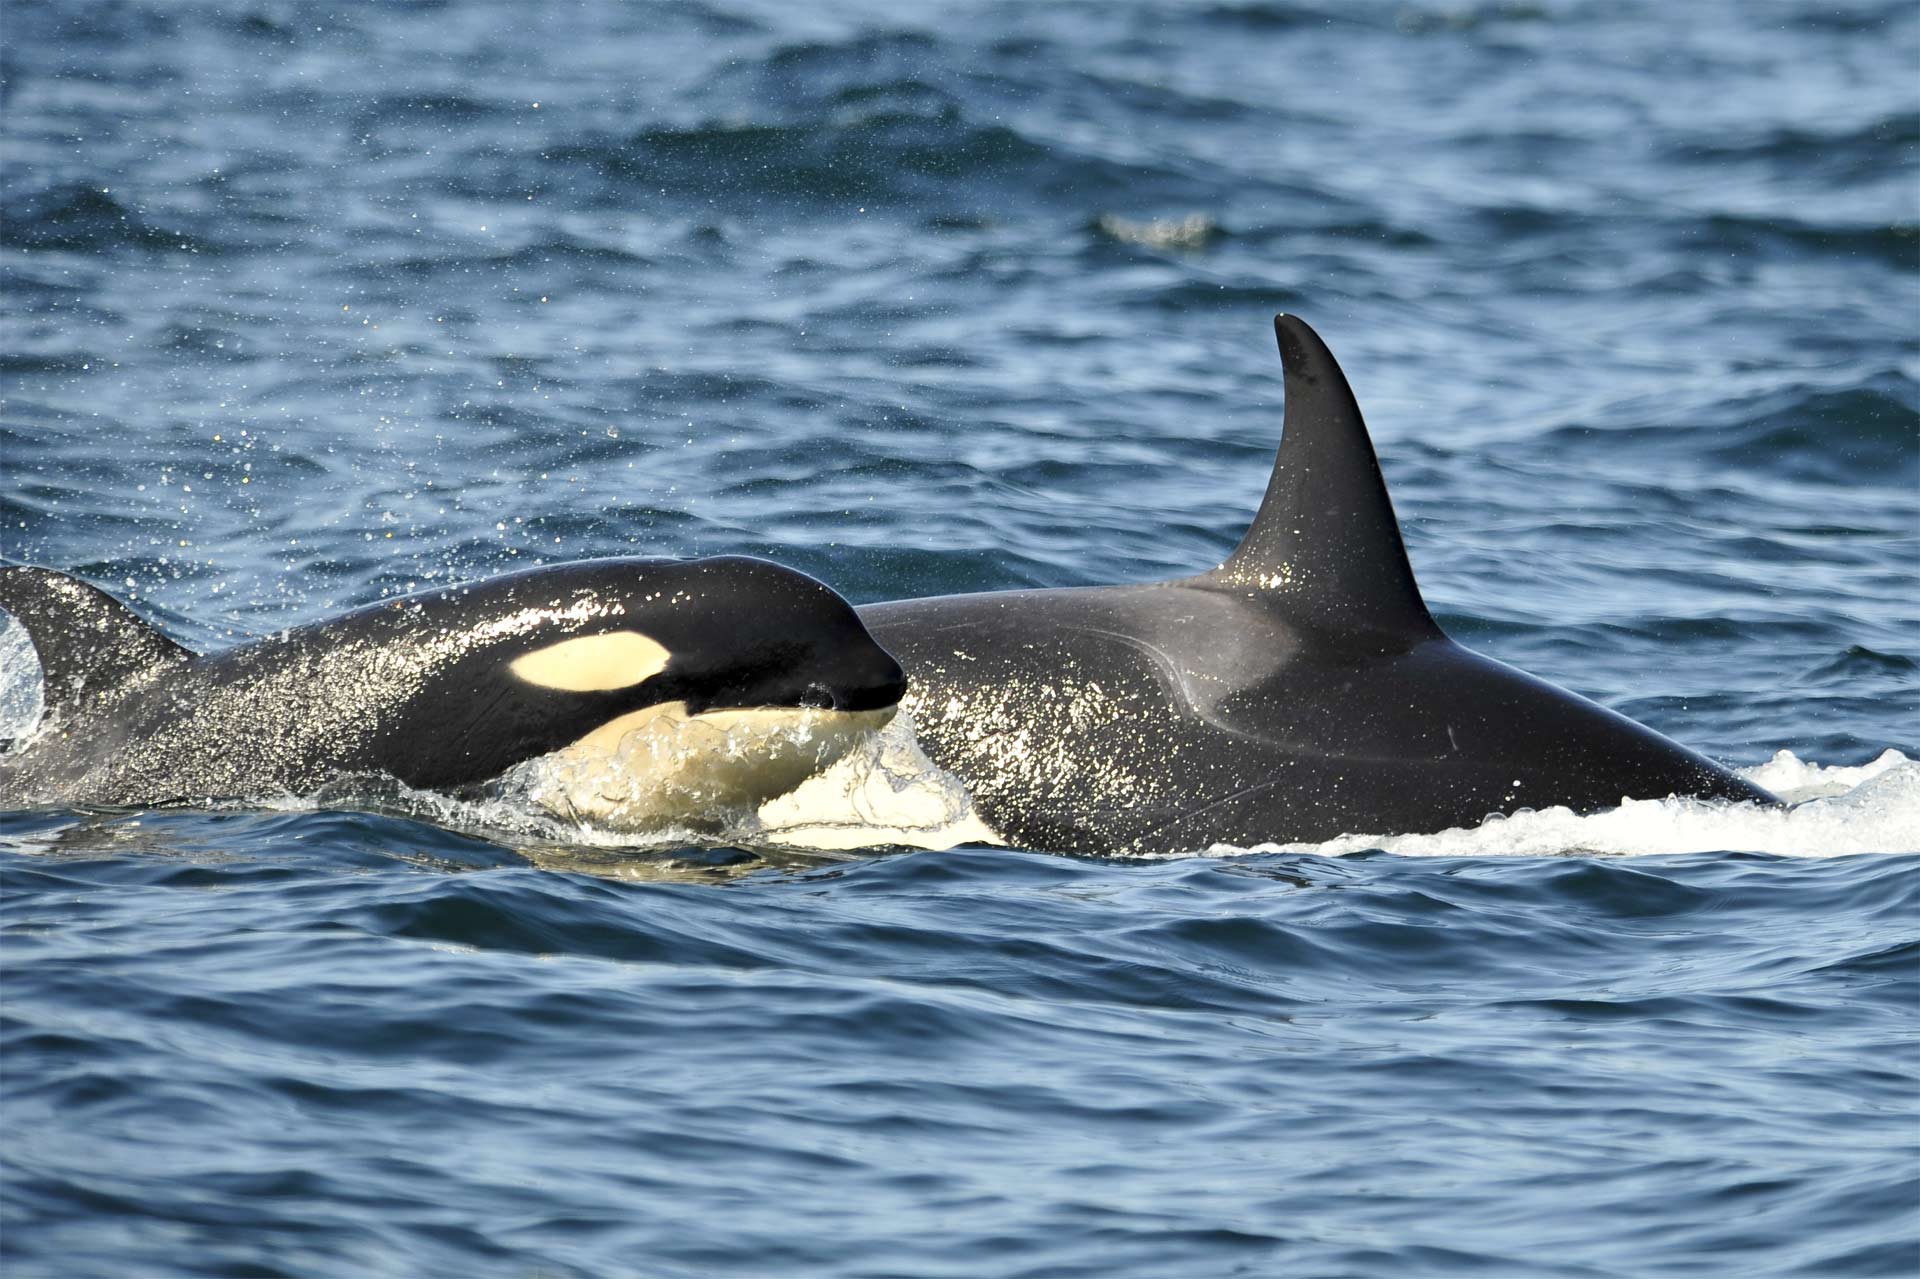 En 2017 estrenarán una nueva experiencia informativa con orcas en un ambiente más natural y con un mensaje de conservación